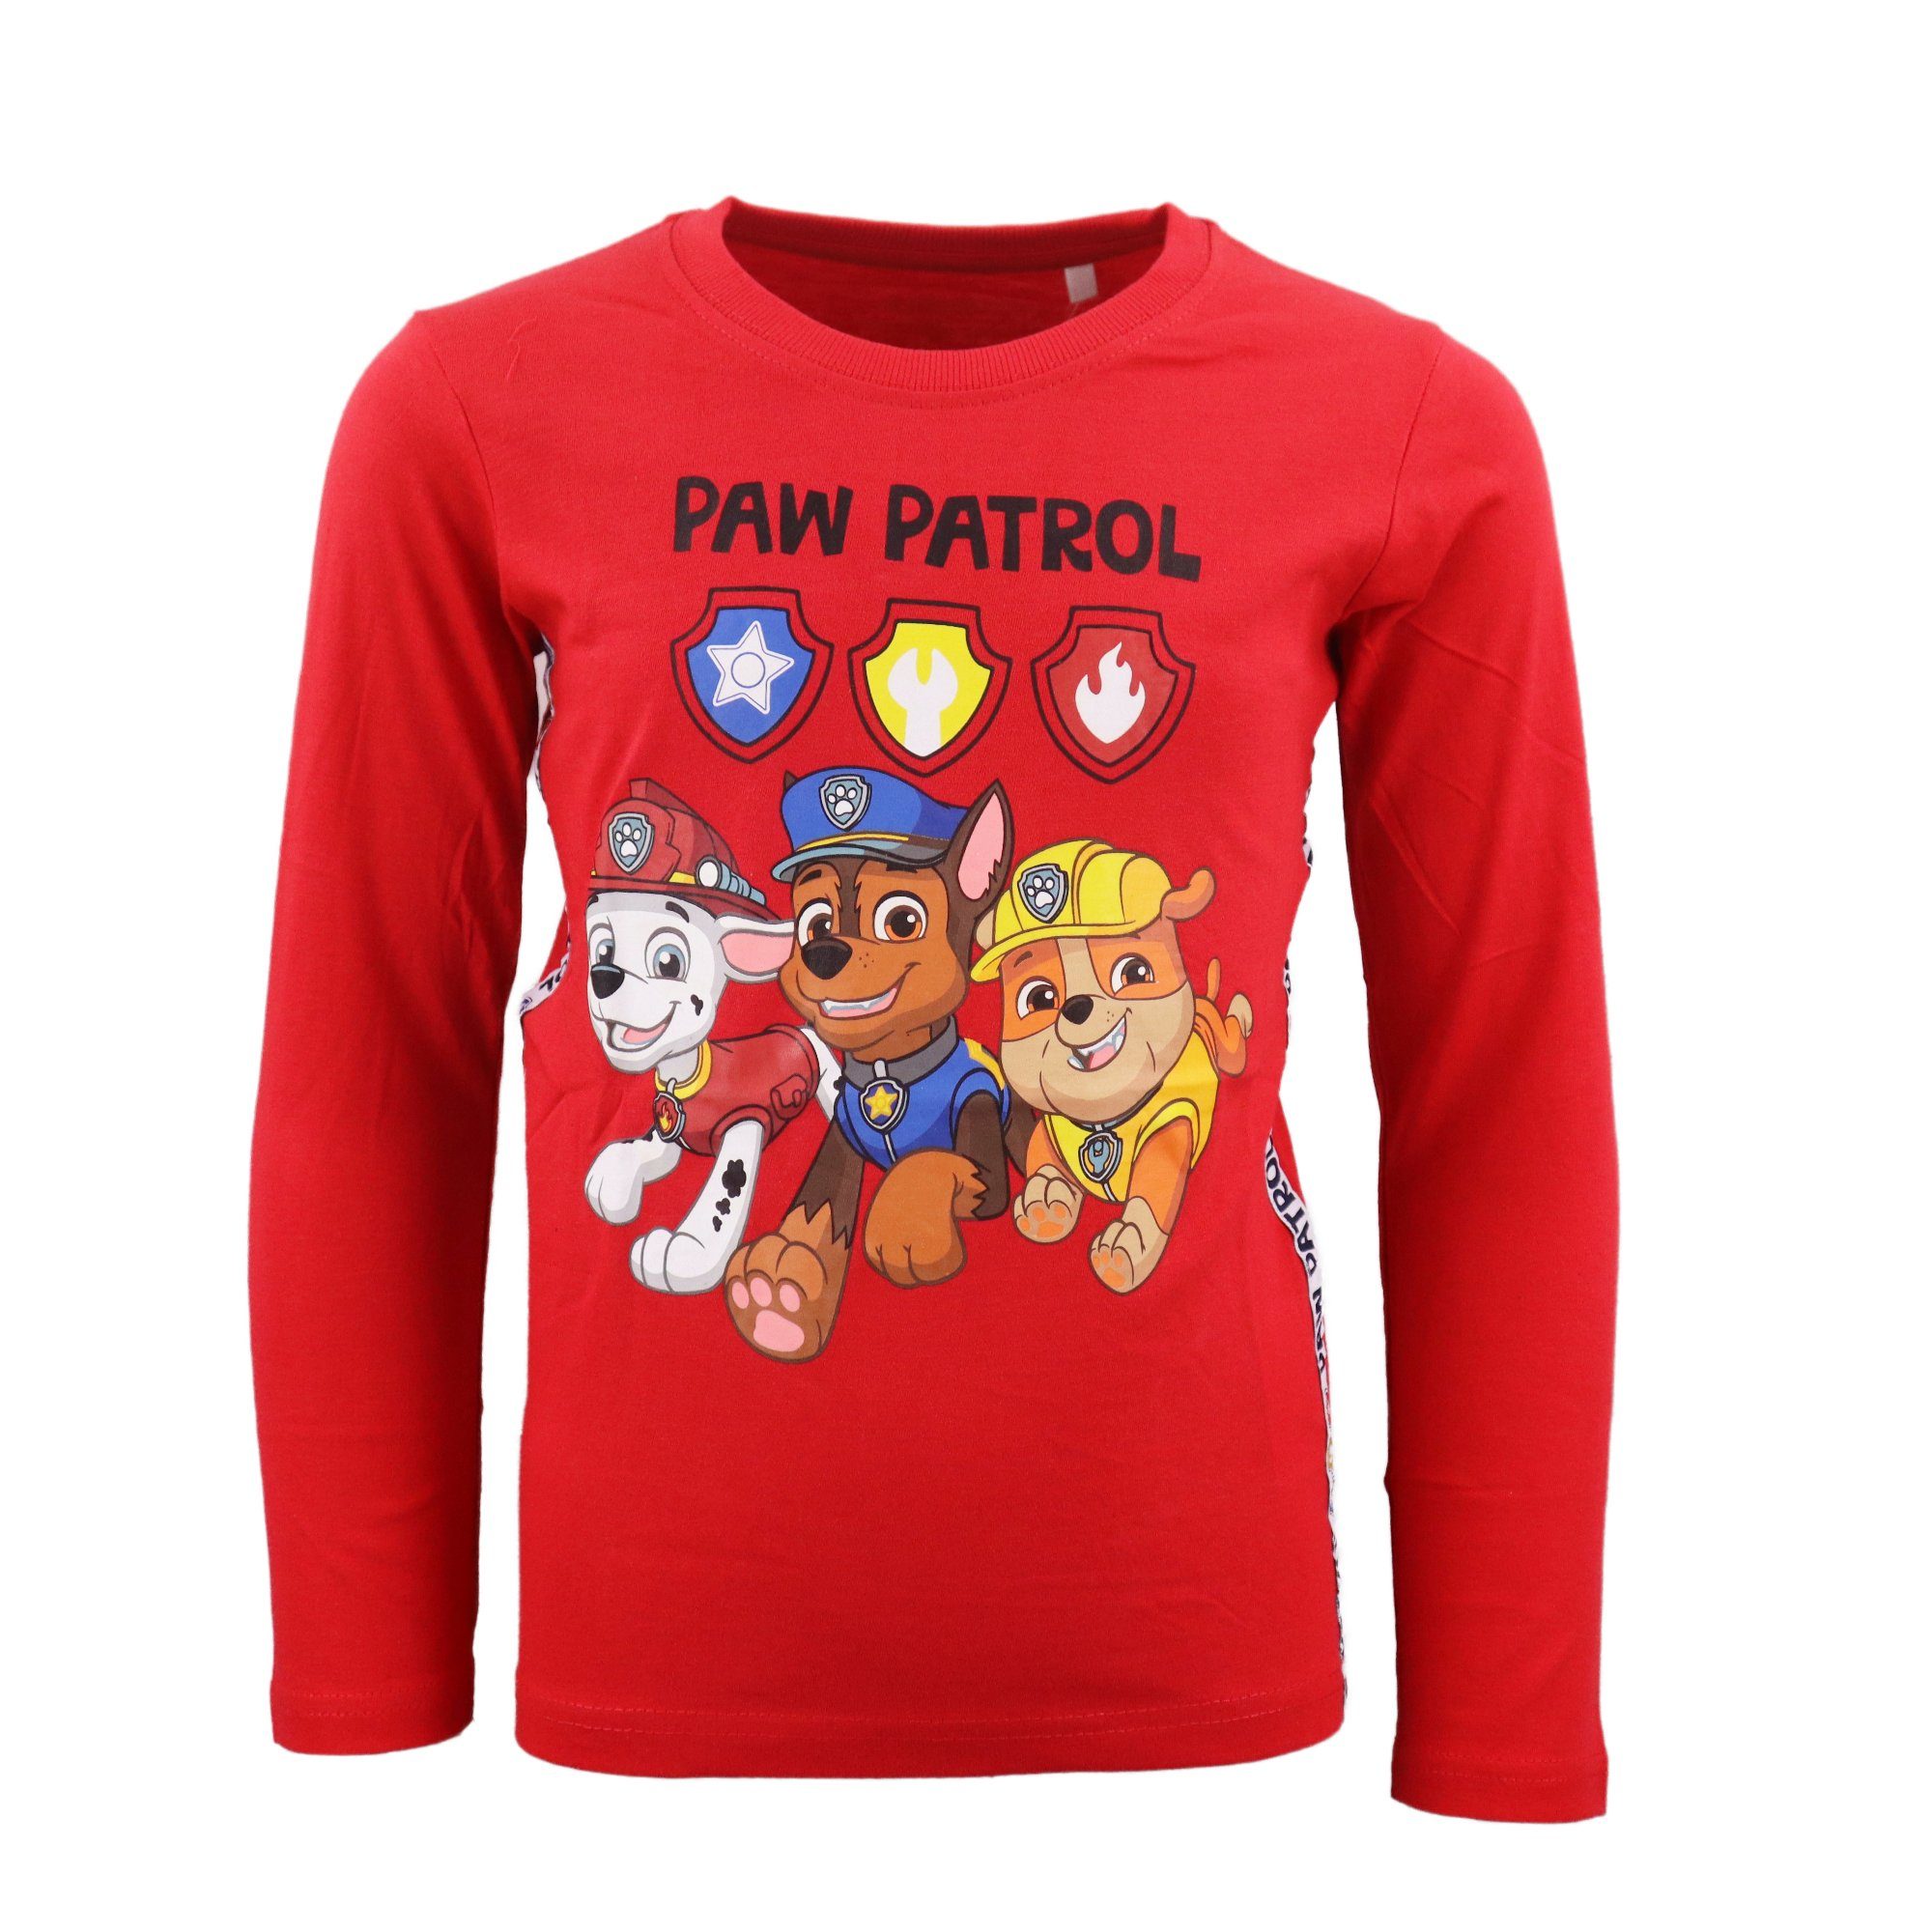 PAW PATROL Langarmshirt Paw Patrol Chase Marshall Kinder Shirt Gr. 98 bis 128, 100% Baumwolle Rot